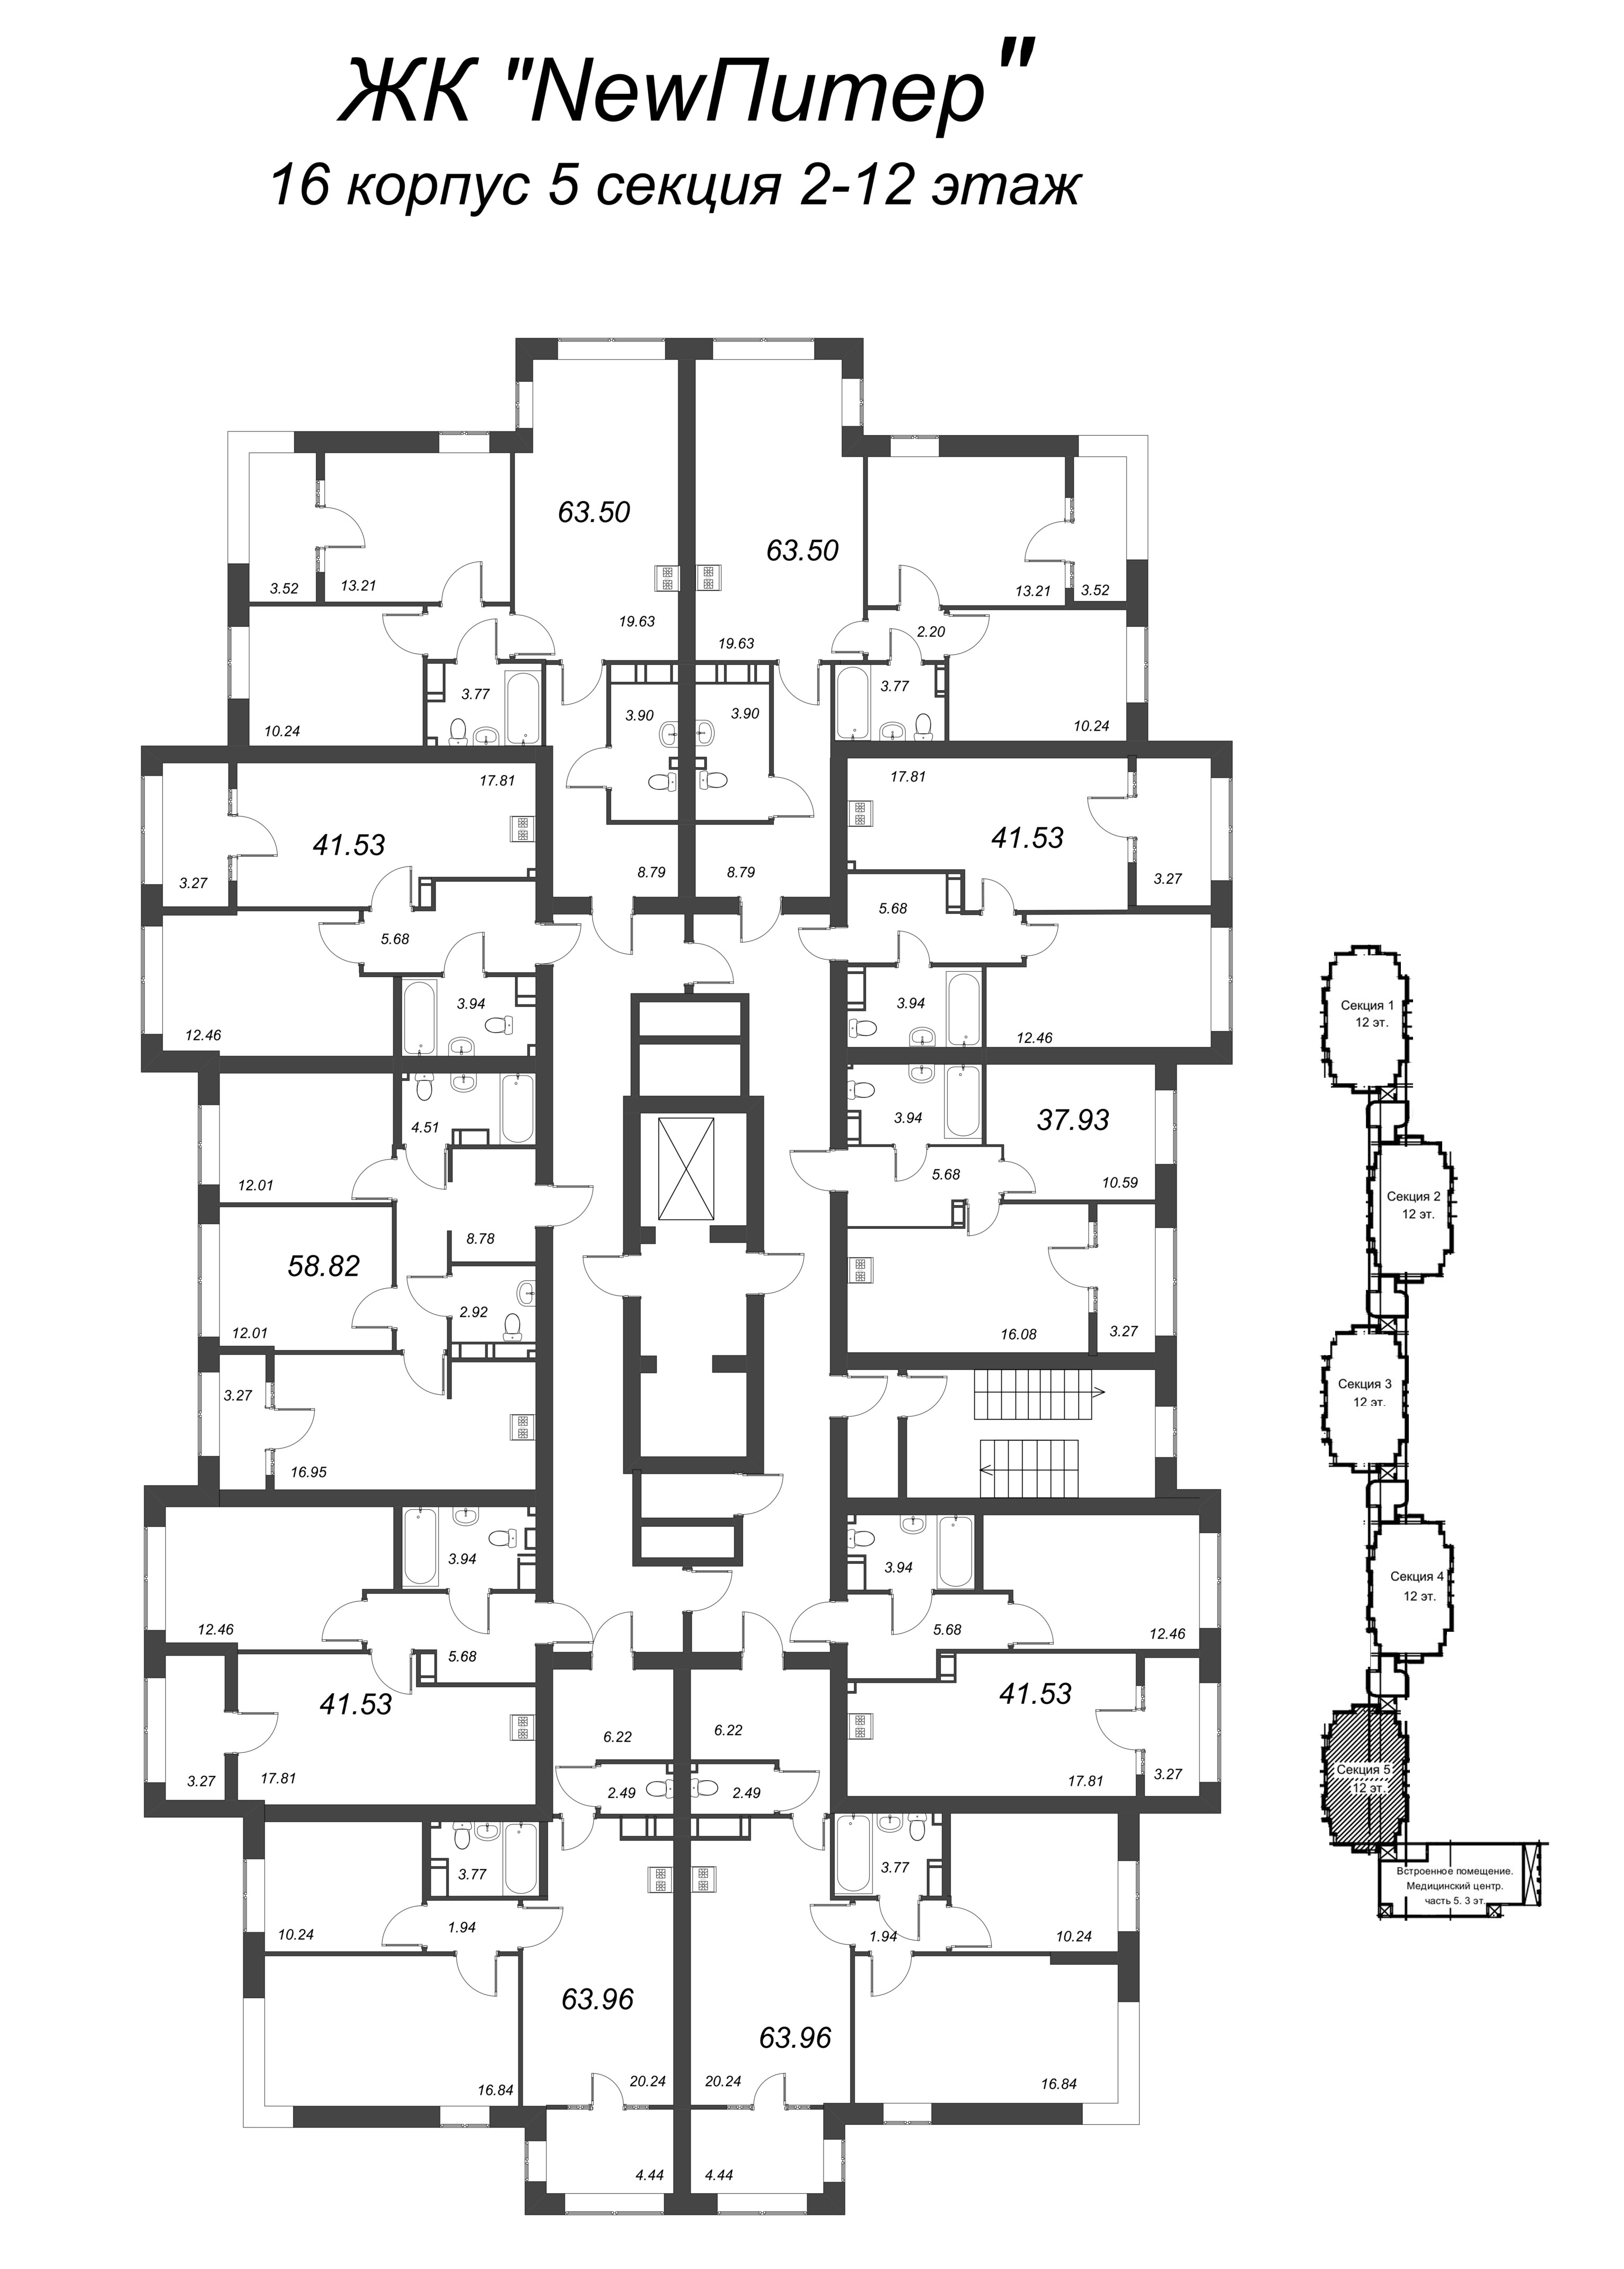 3-комнатная (Евро) квартира, 64.5 м² в ЖК "NewПитер 2.0" - планировка этажа